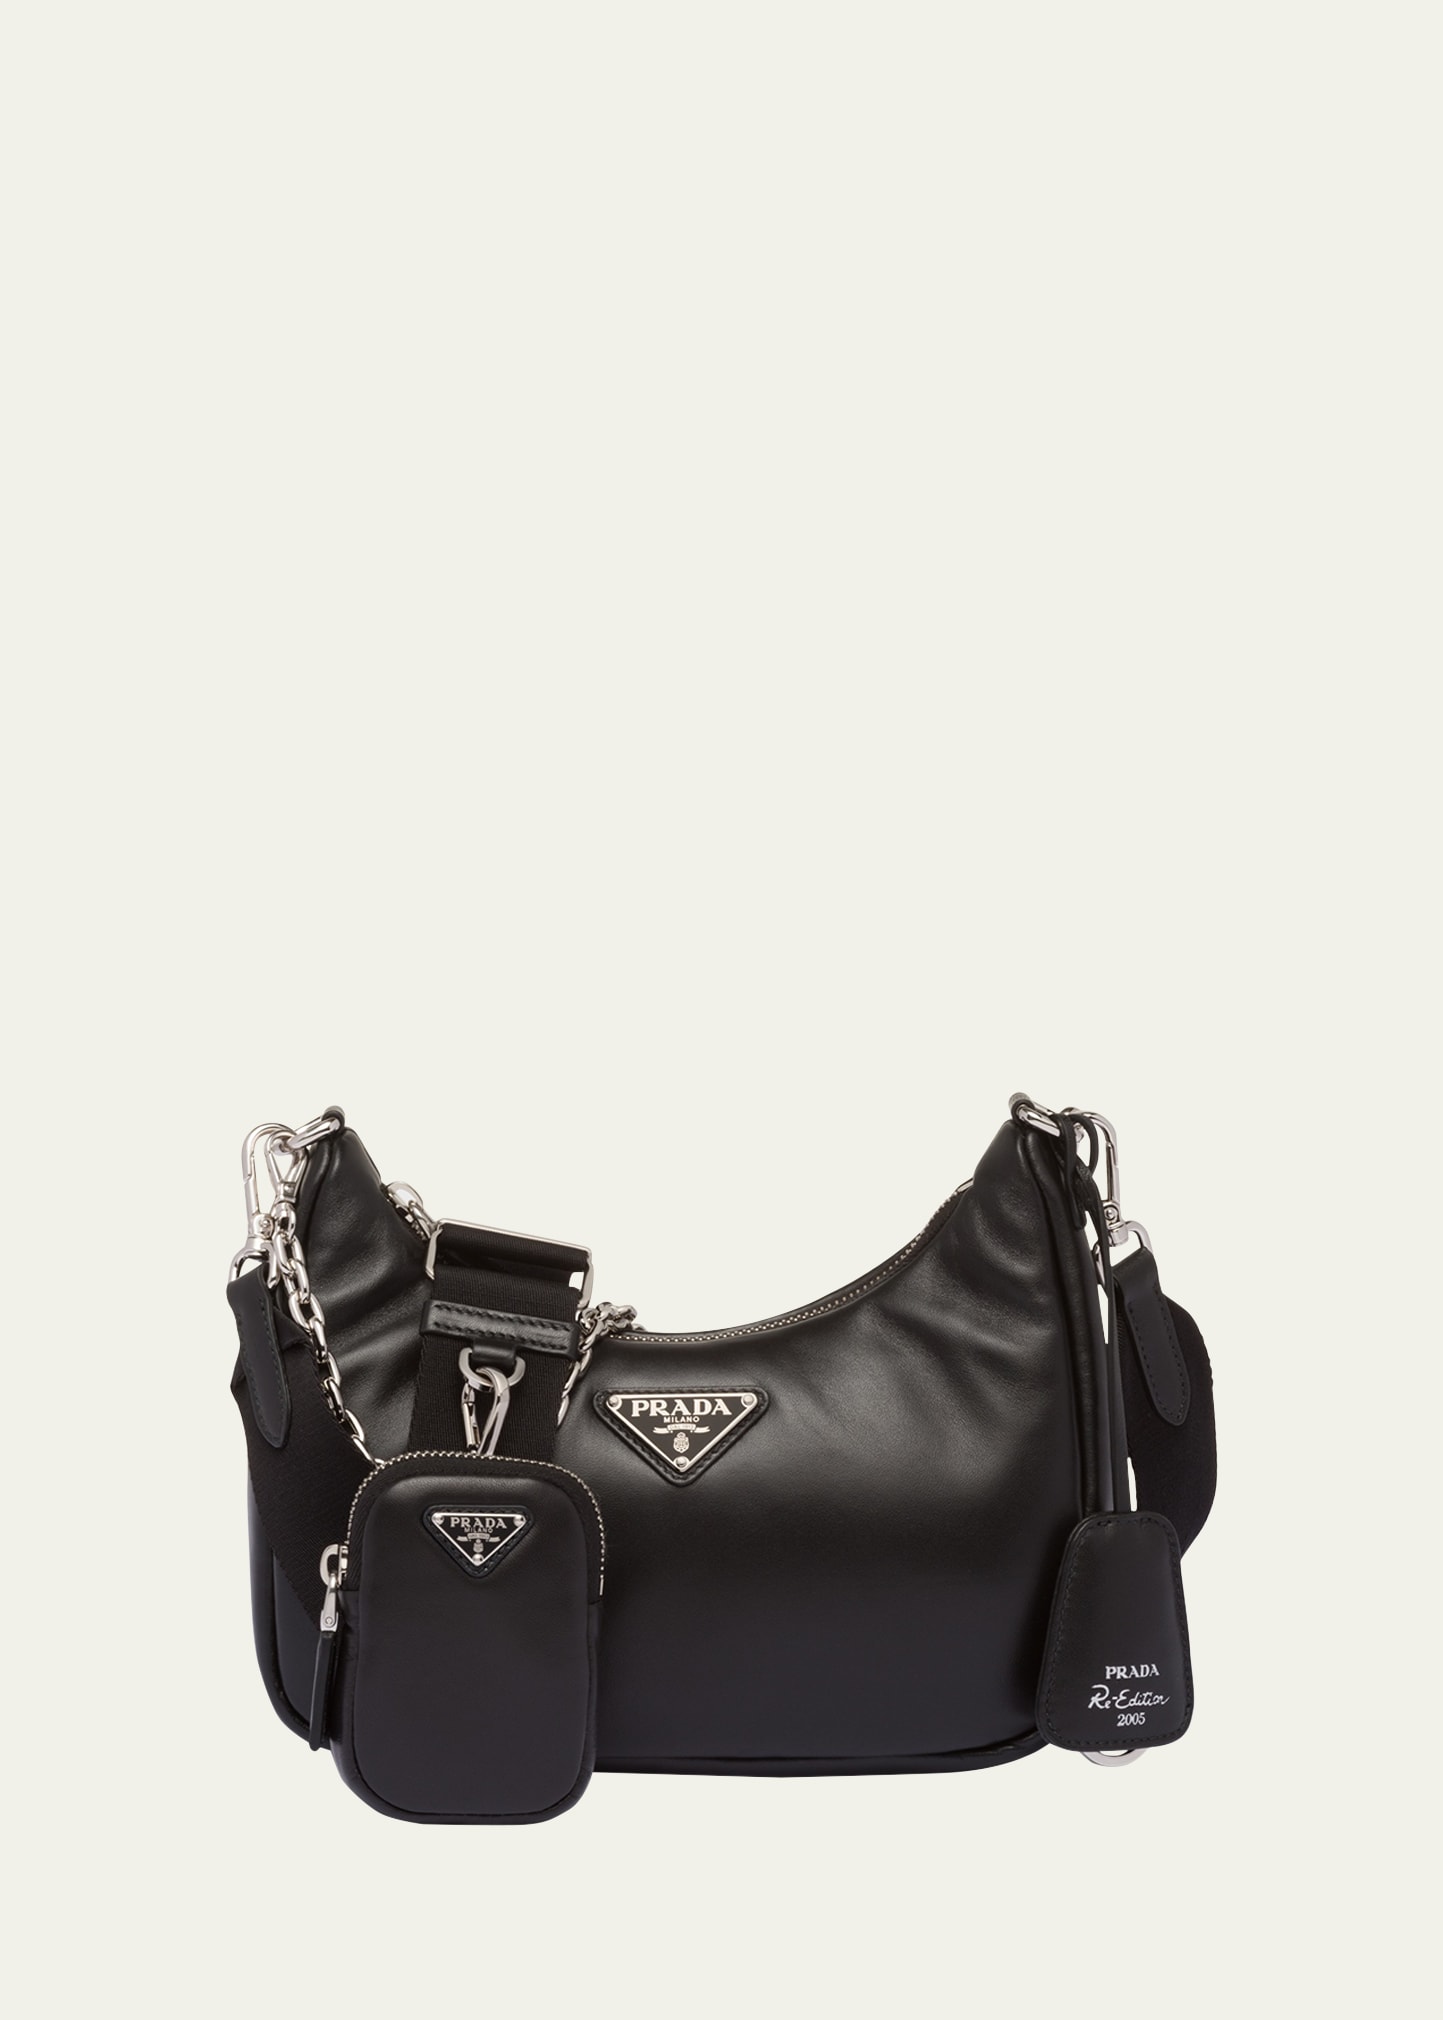 Prada Re-edition 2005 Nylon Chain Shoulder Bag In F0002 Nero